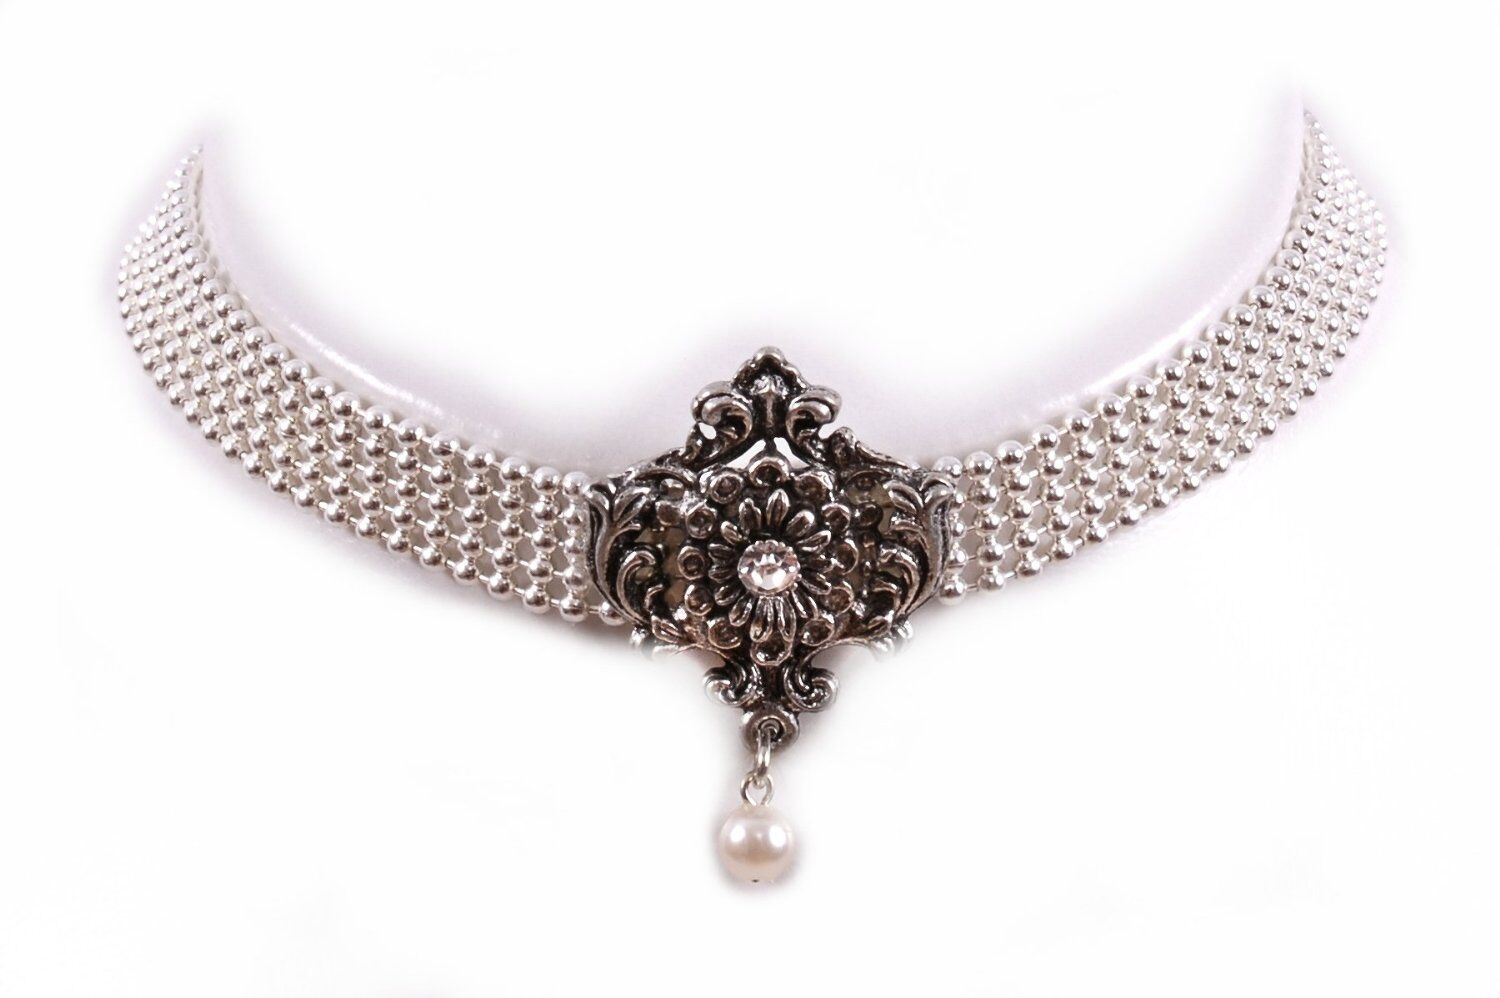 Kropfband Silberband Ornament + Perle - echt versilbert